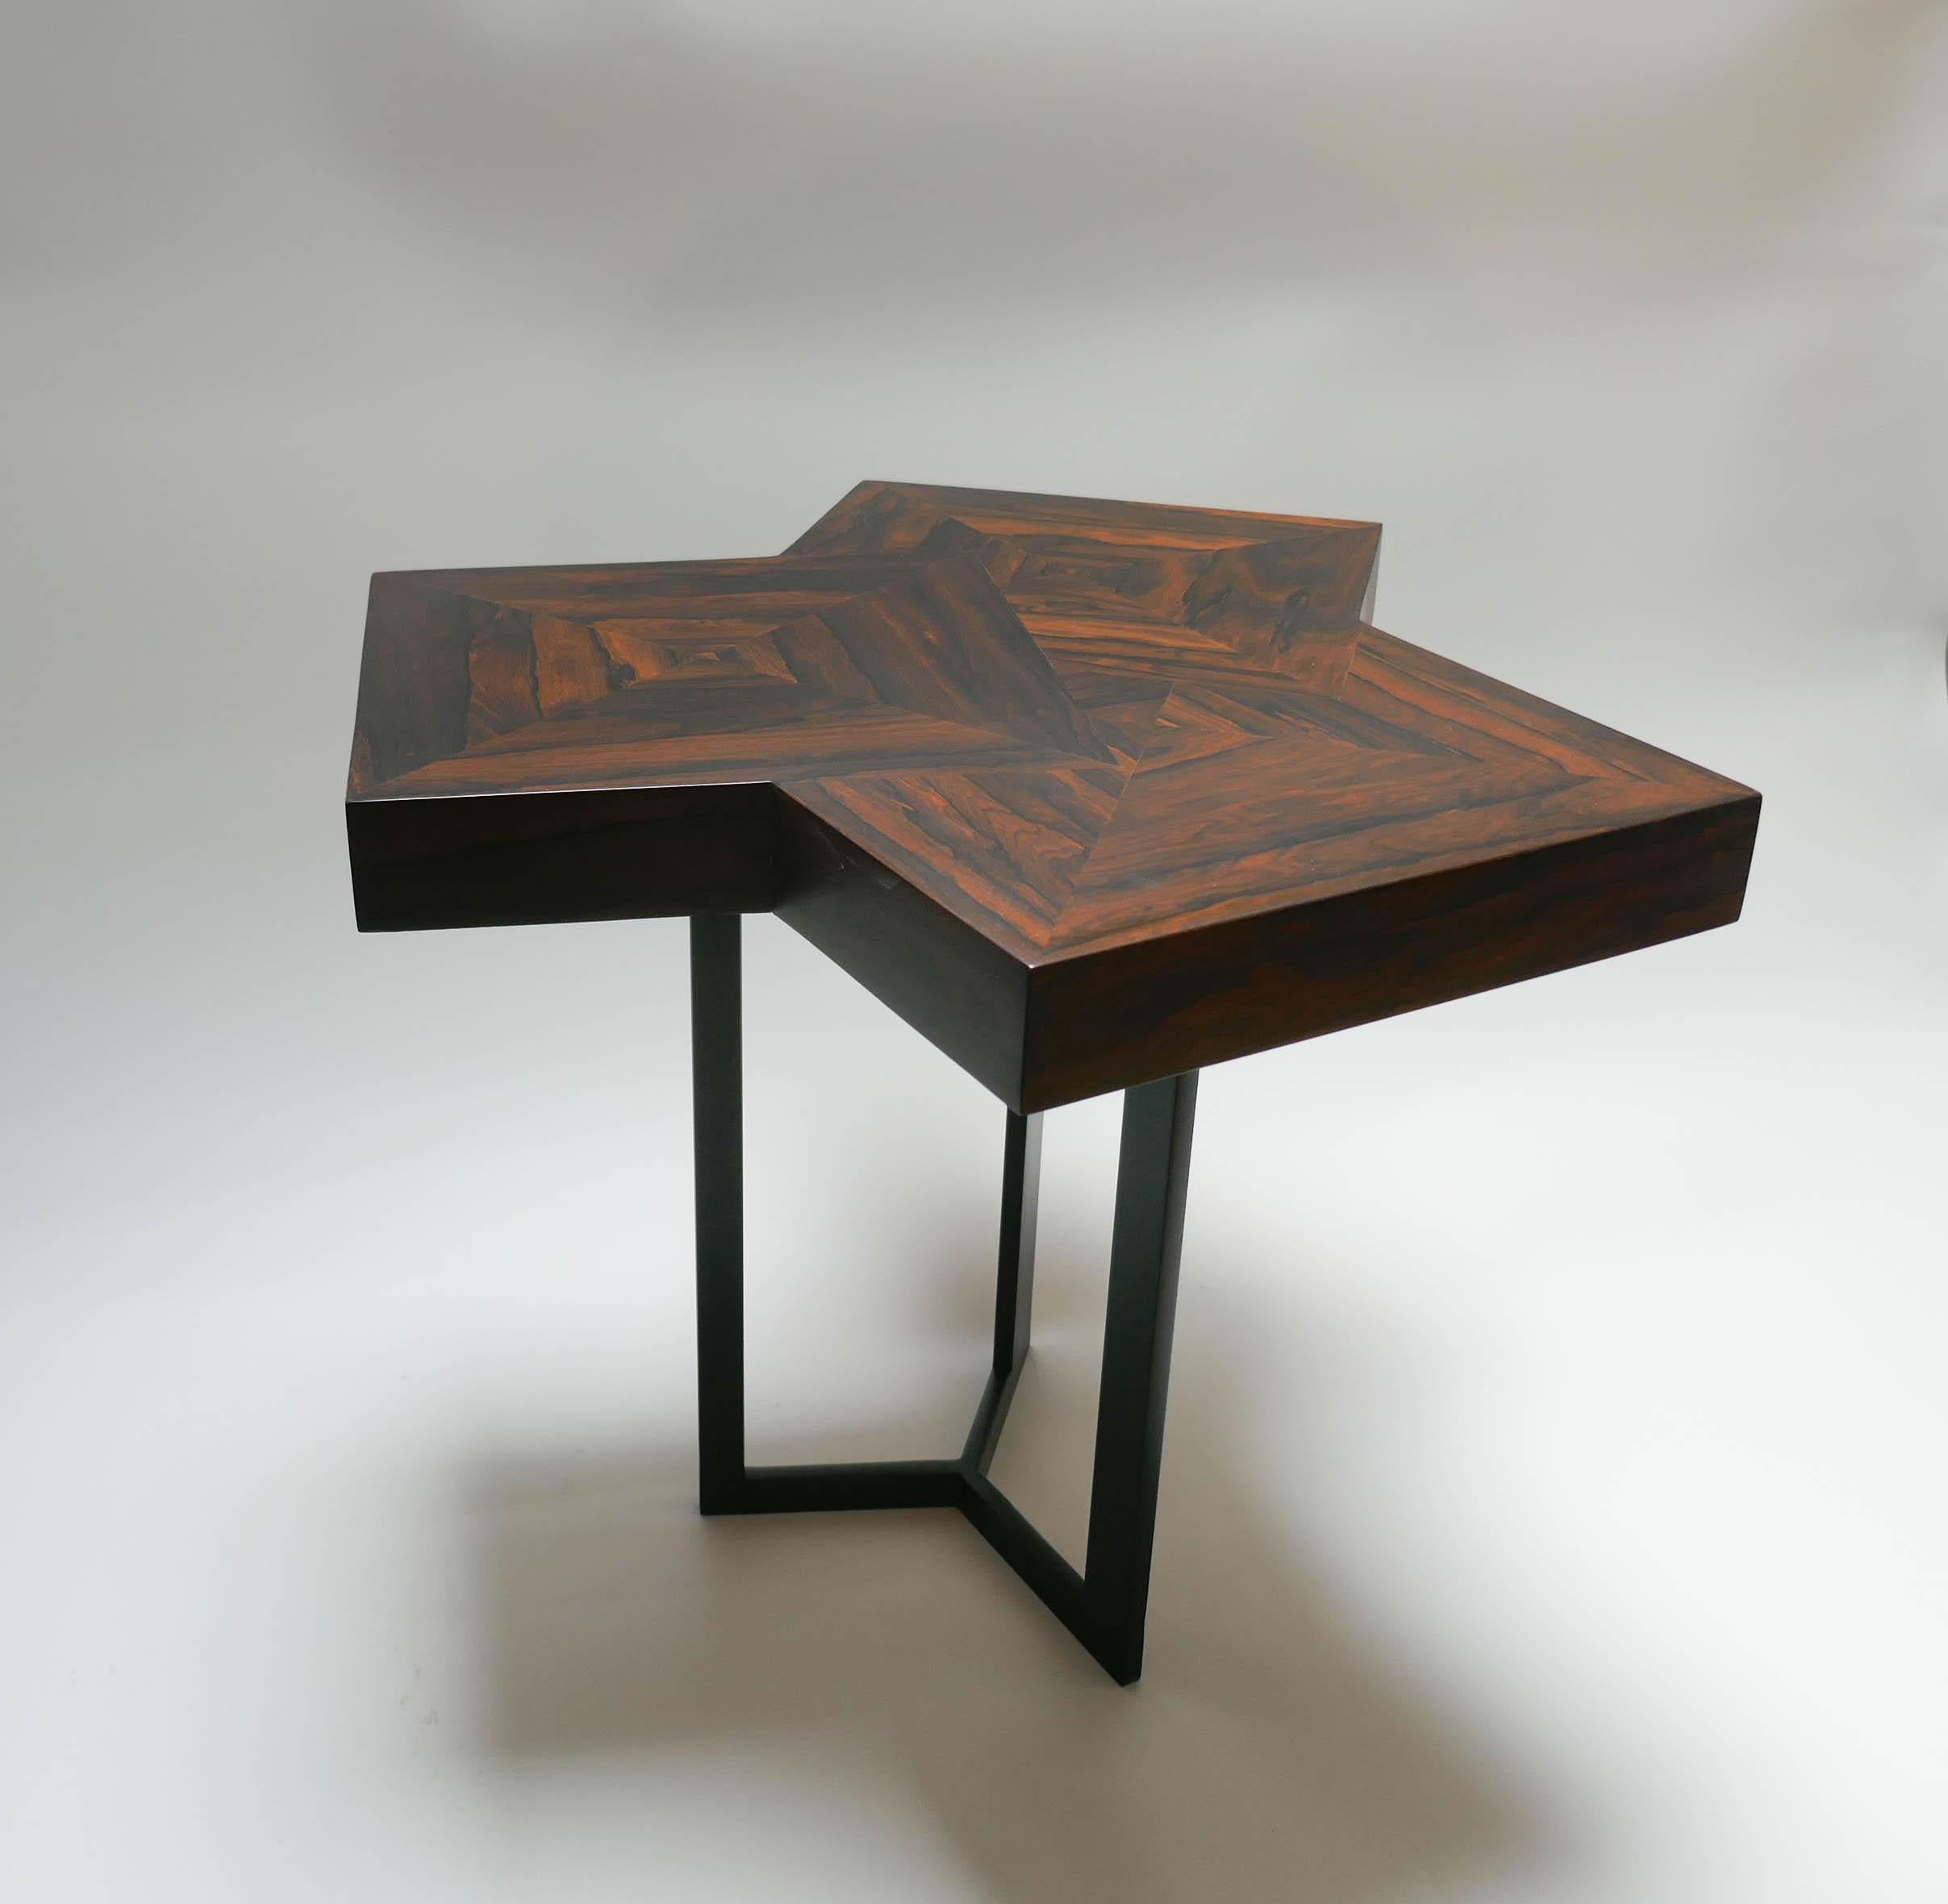 Paire de tables basses en bois de Ziricotte et métal laqué noir.
N'hésitez pas à demander un devis d'expédition pour bénéficier de la meilleure offre.